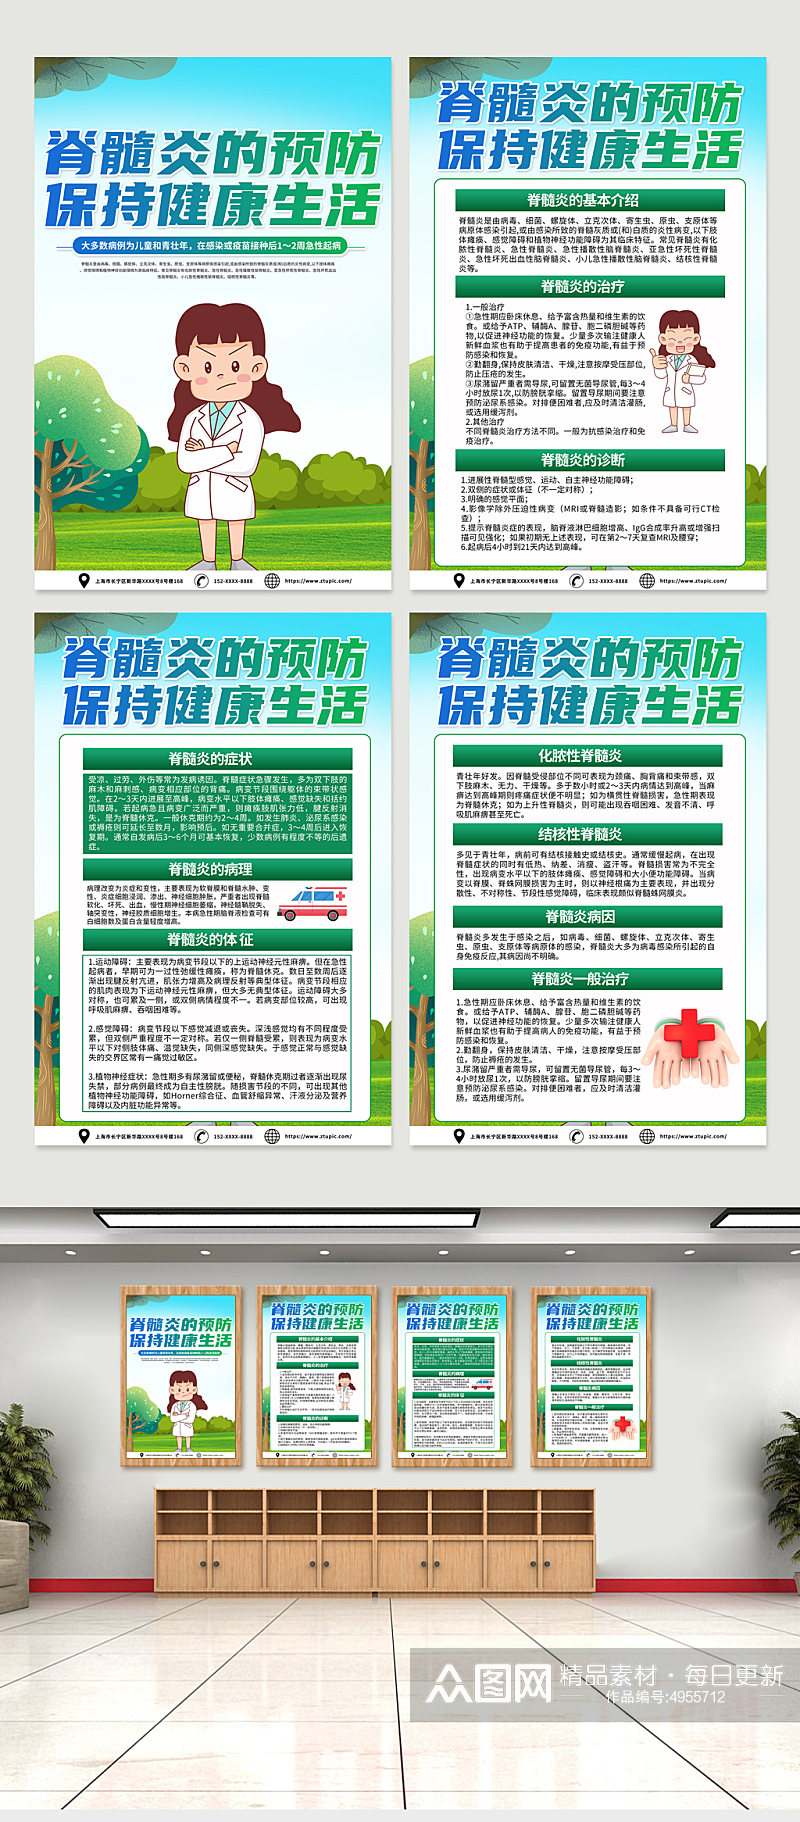 高端绿色脊髓炎医学知识海报设计素材